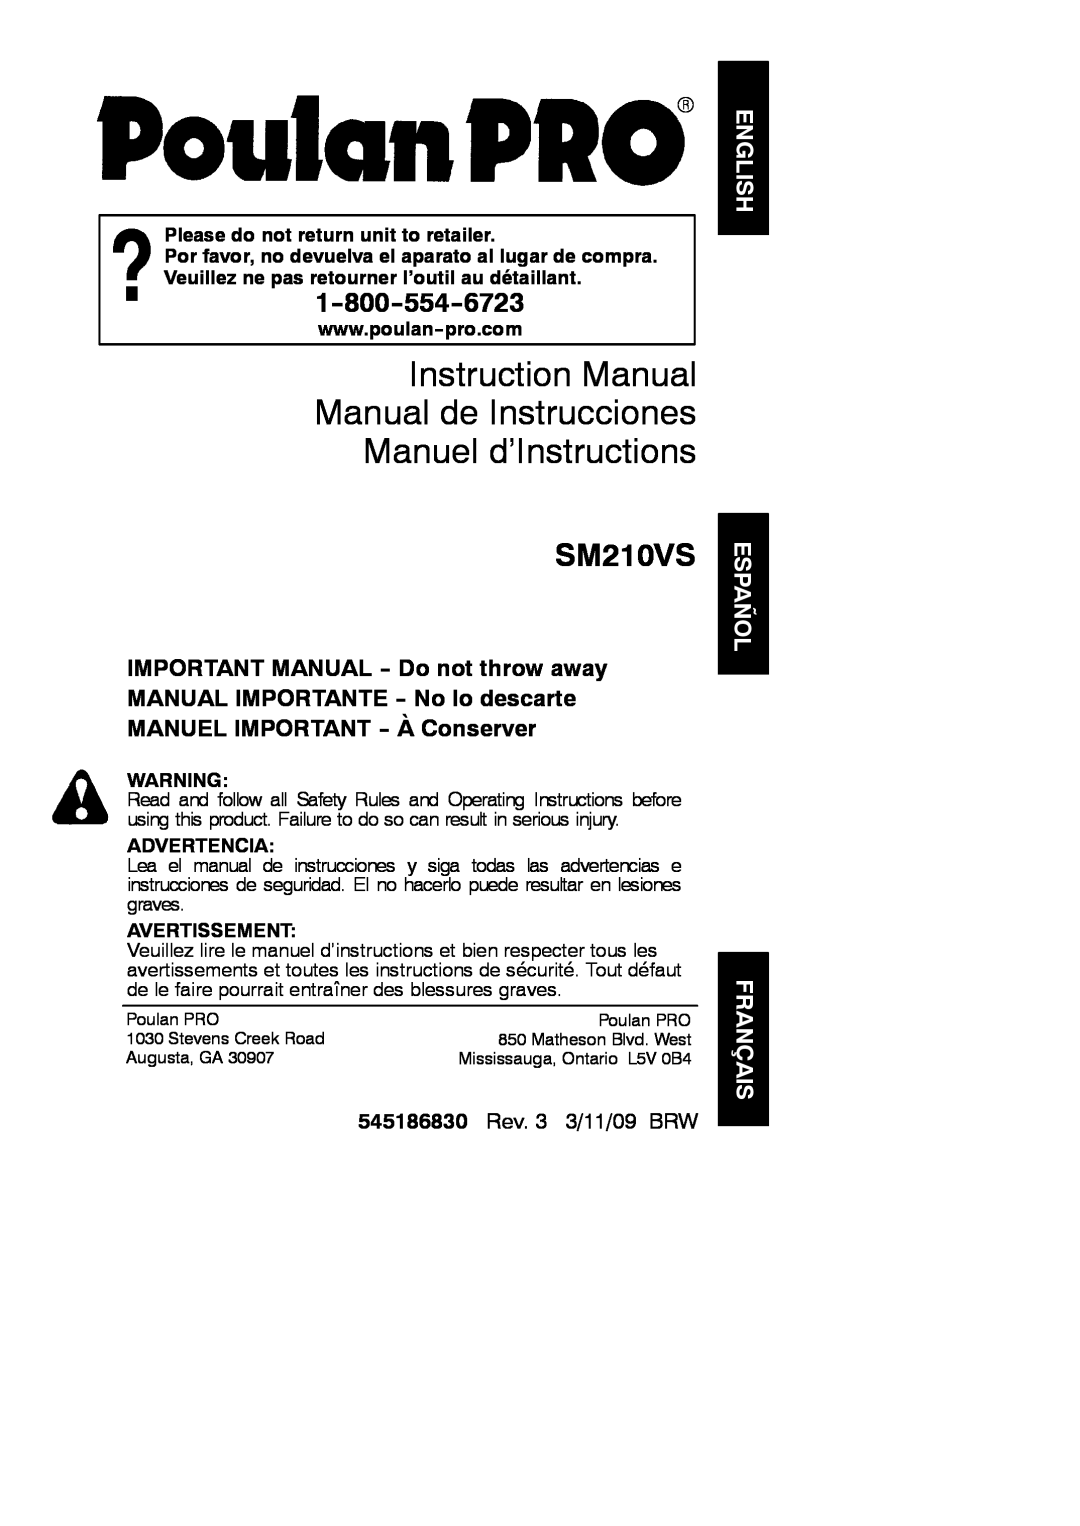 Poulan instruction manual Manuel d’Instructions, SM210VS, English Español Français, 545186830 Rev. 3 3/11/09 BRW 